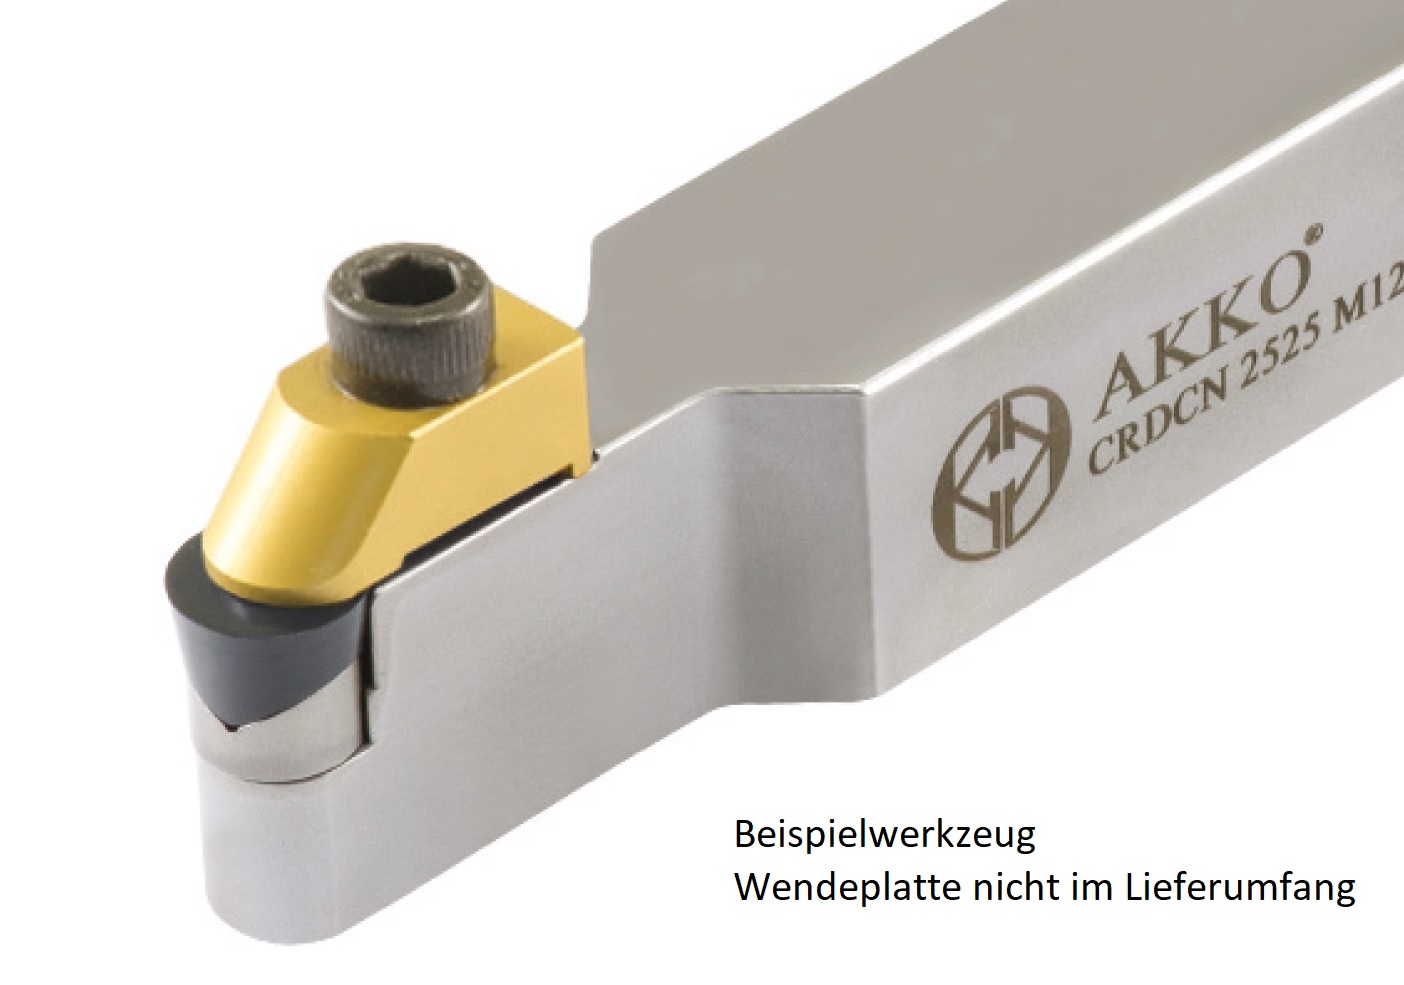 AKKO-Außen-Drehhalter C-System für RCGX 060600
neutral Schaft 25 x 25 mm